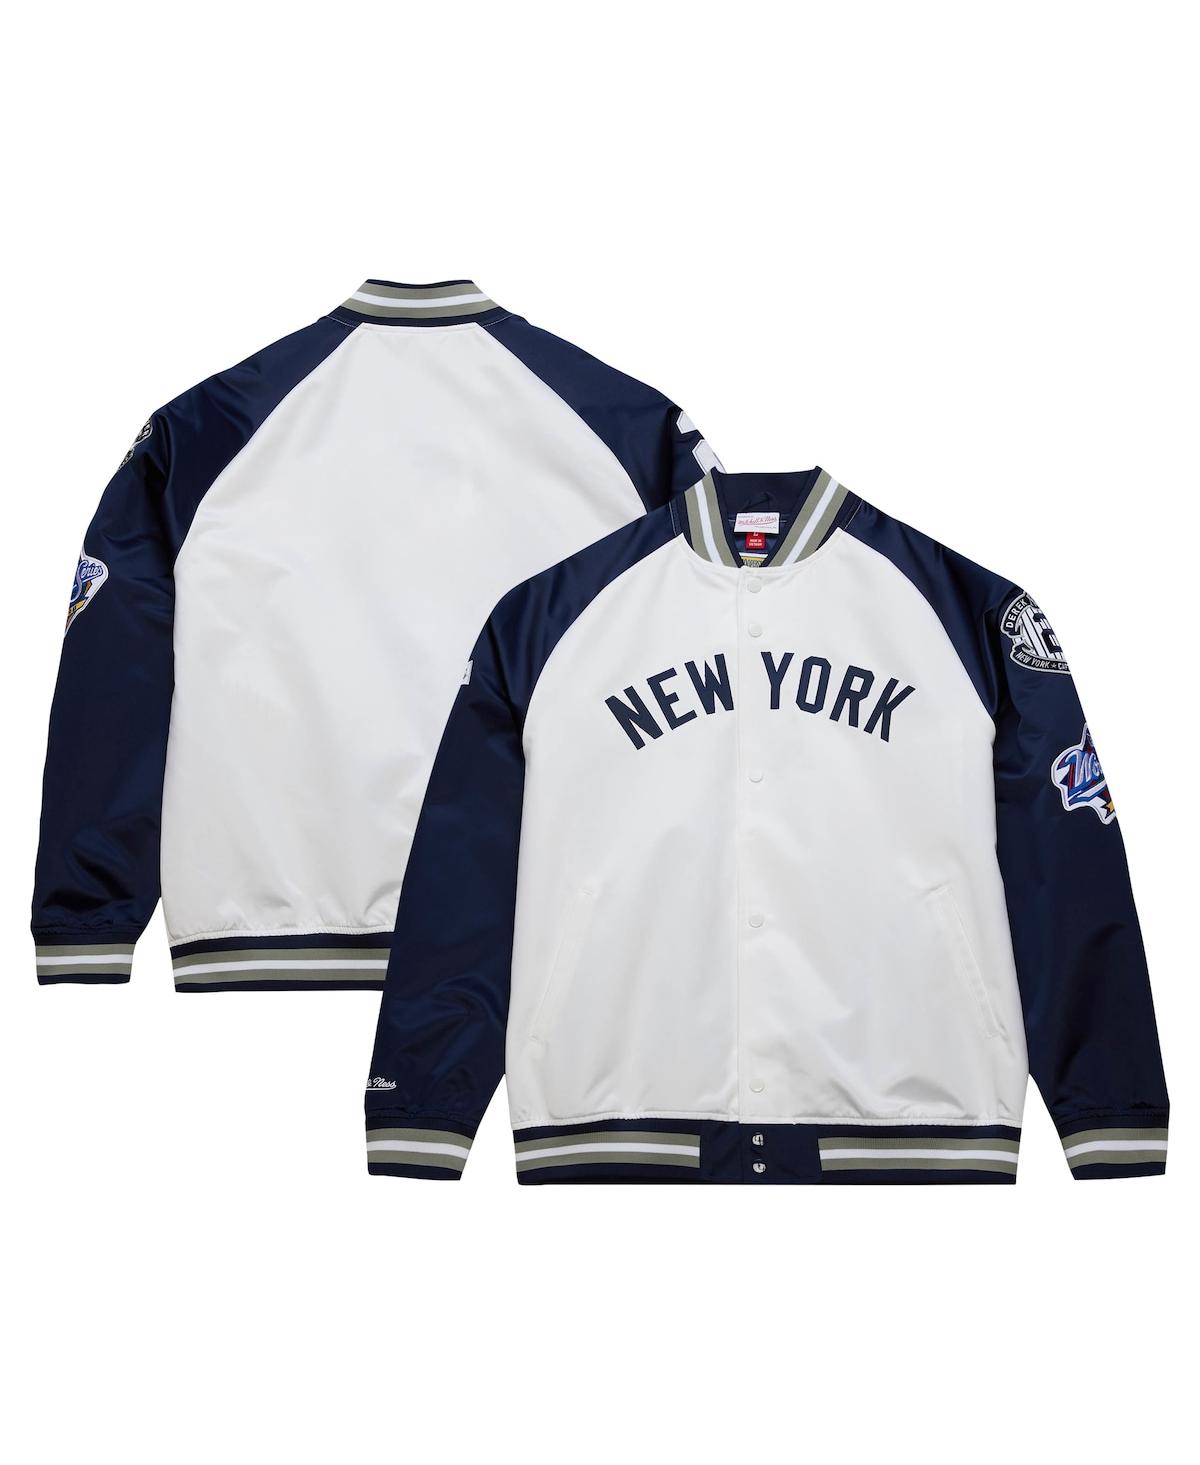 Men's Derek JeterÂ White/Navy New York Yankees Cooperstown Collection Legends Lightweight Satin Raglan Full-Snap Jacket - White, Navy